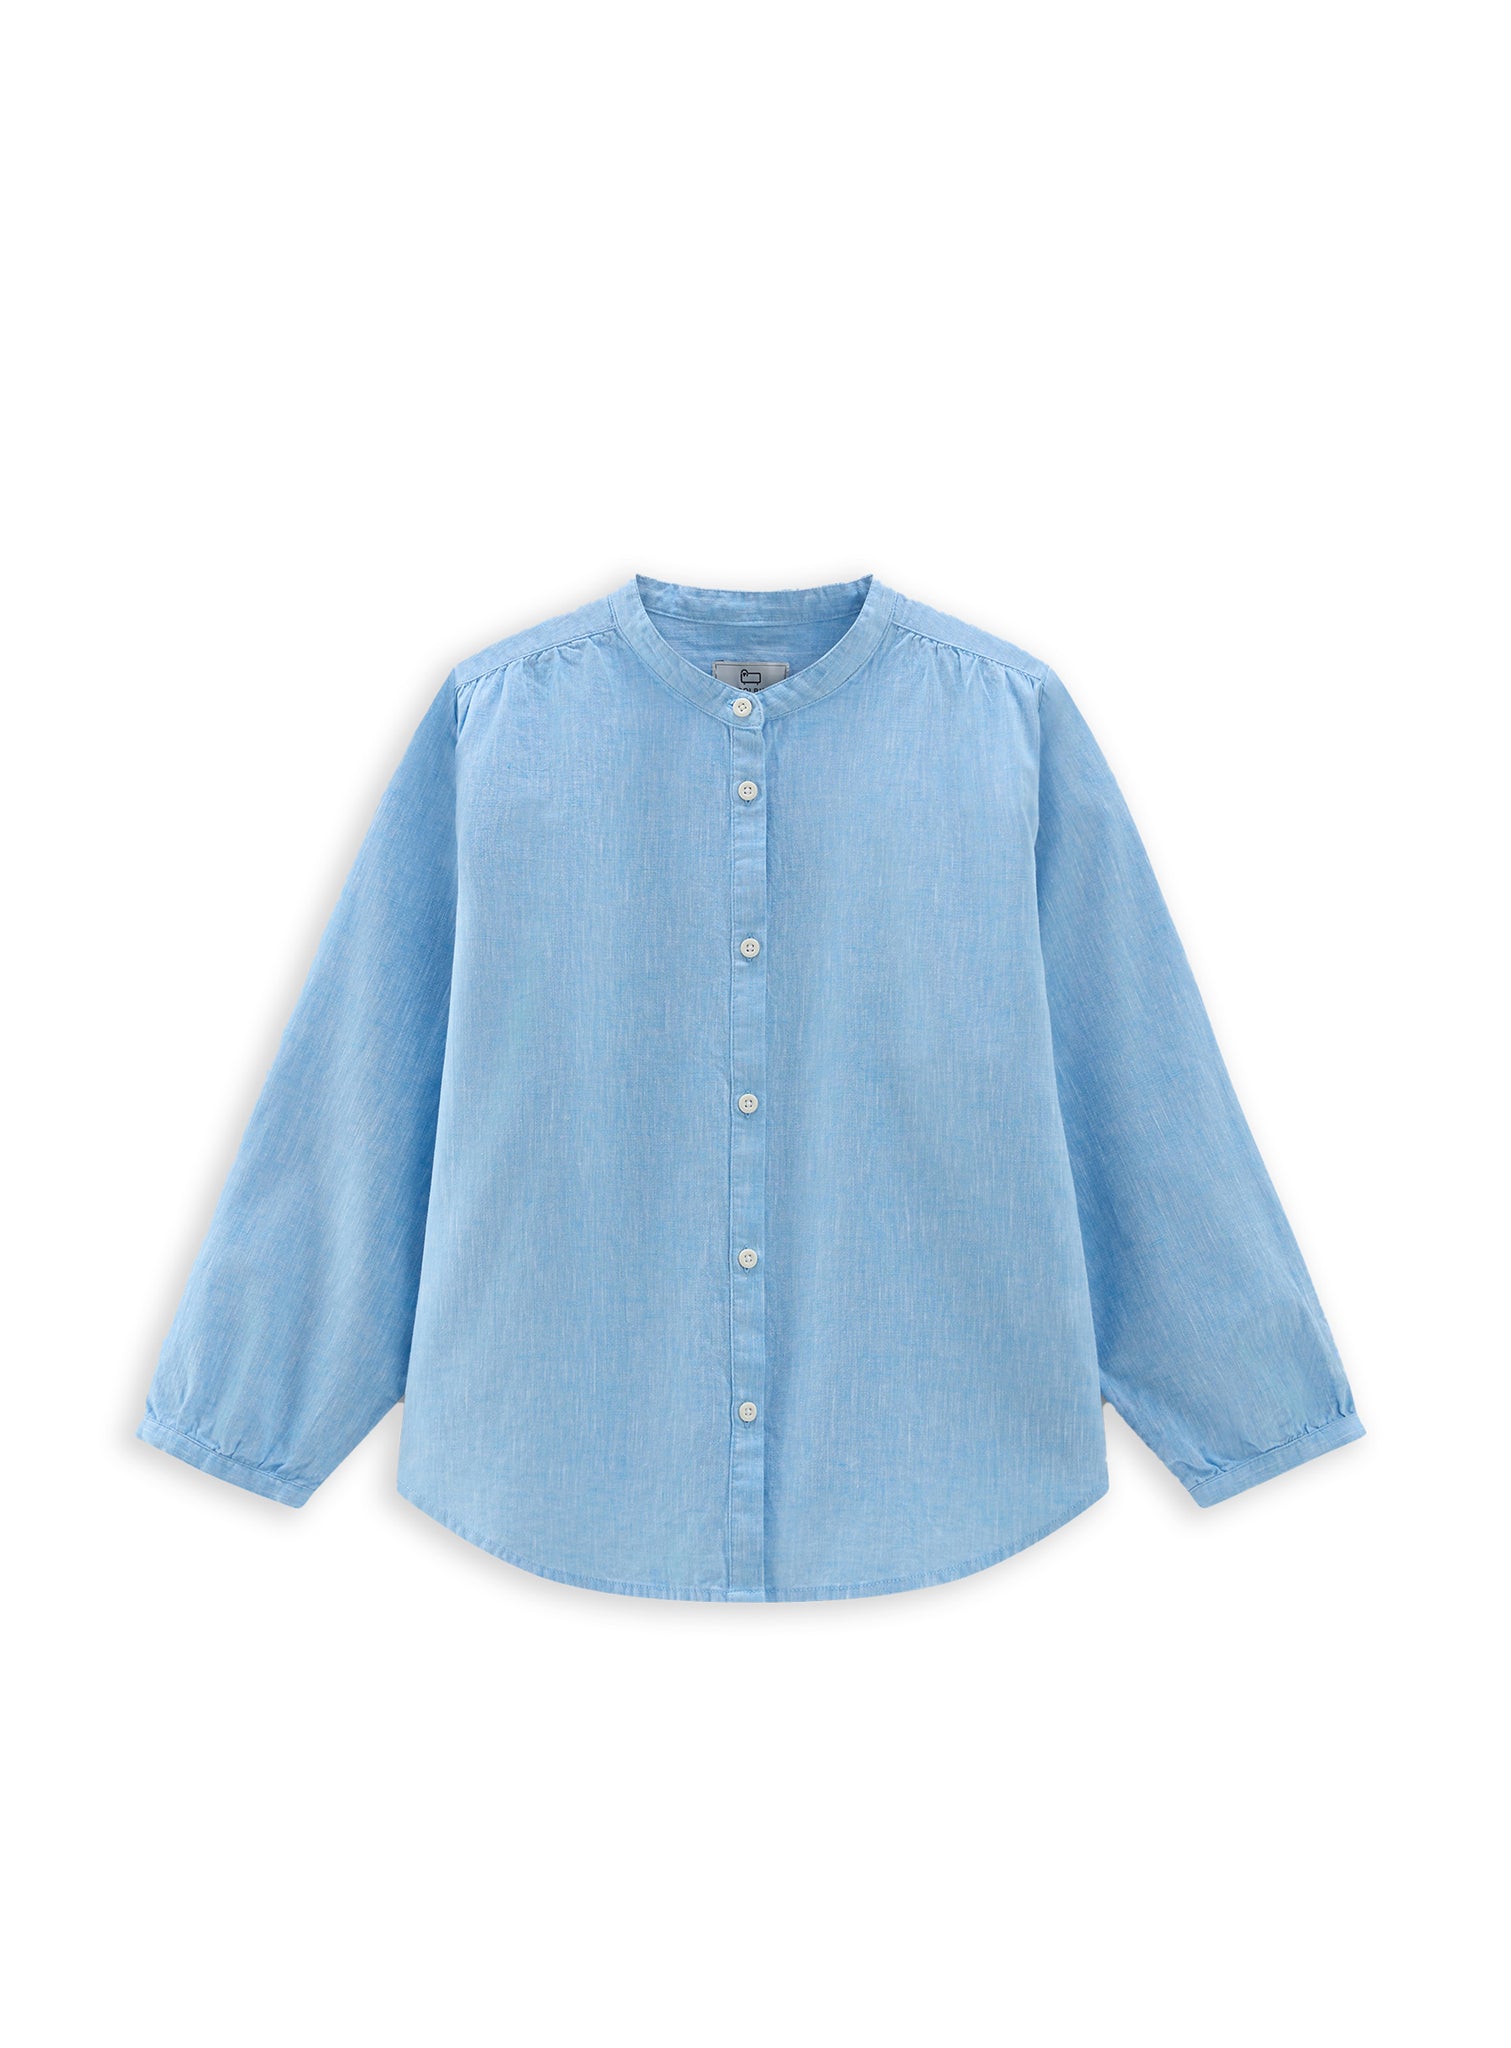 Woolrich Cotton Linen Shirt Light Blue Women's Shirt